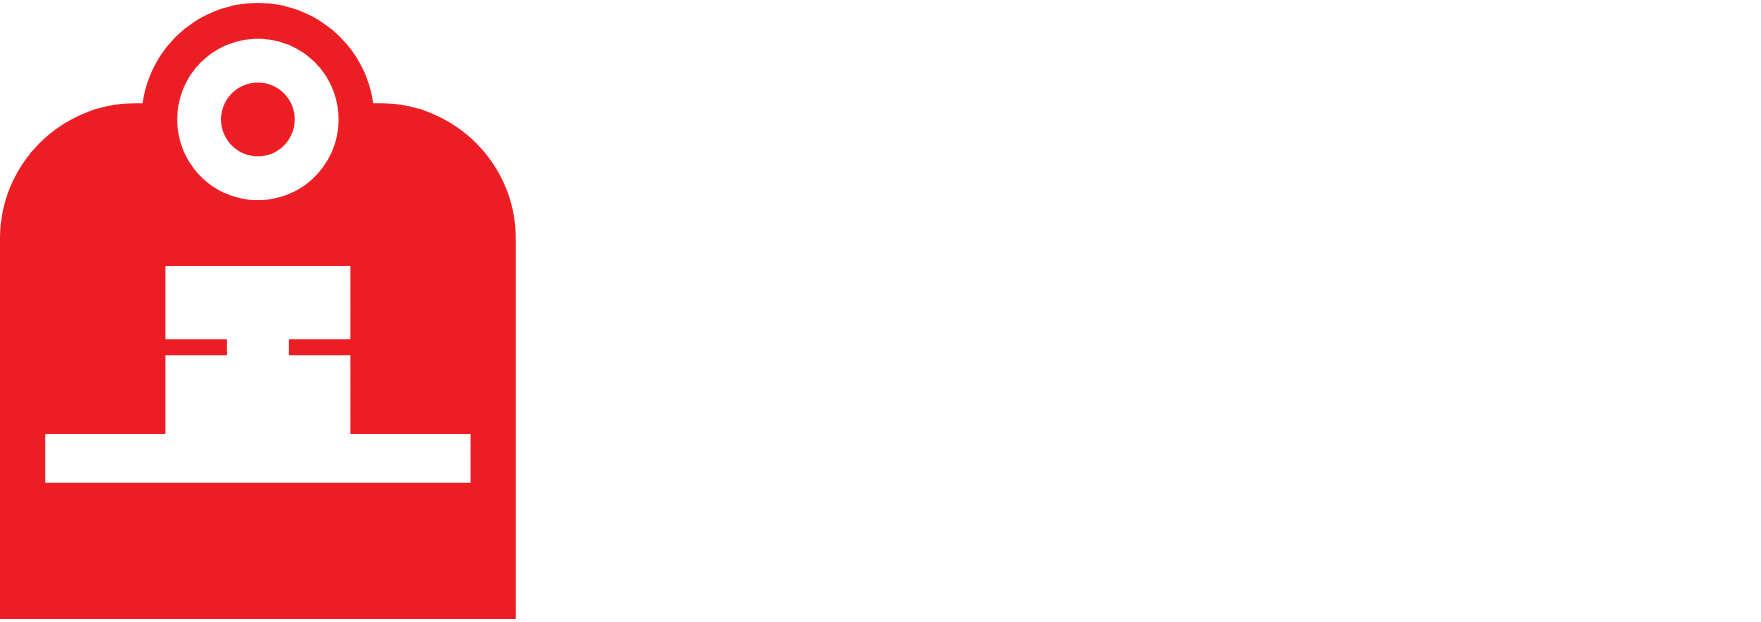 Indian Railway Finance logo grand pour les fonds sombres (PNG transparent)